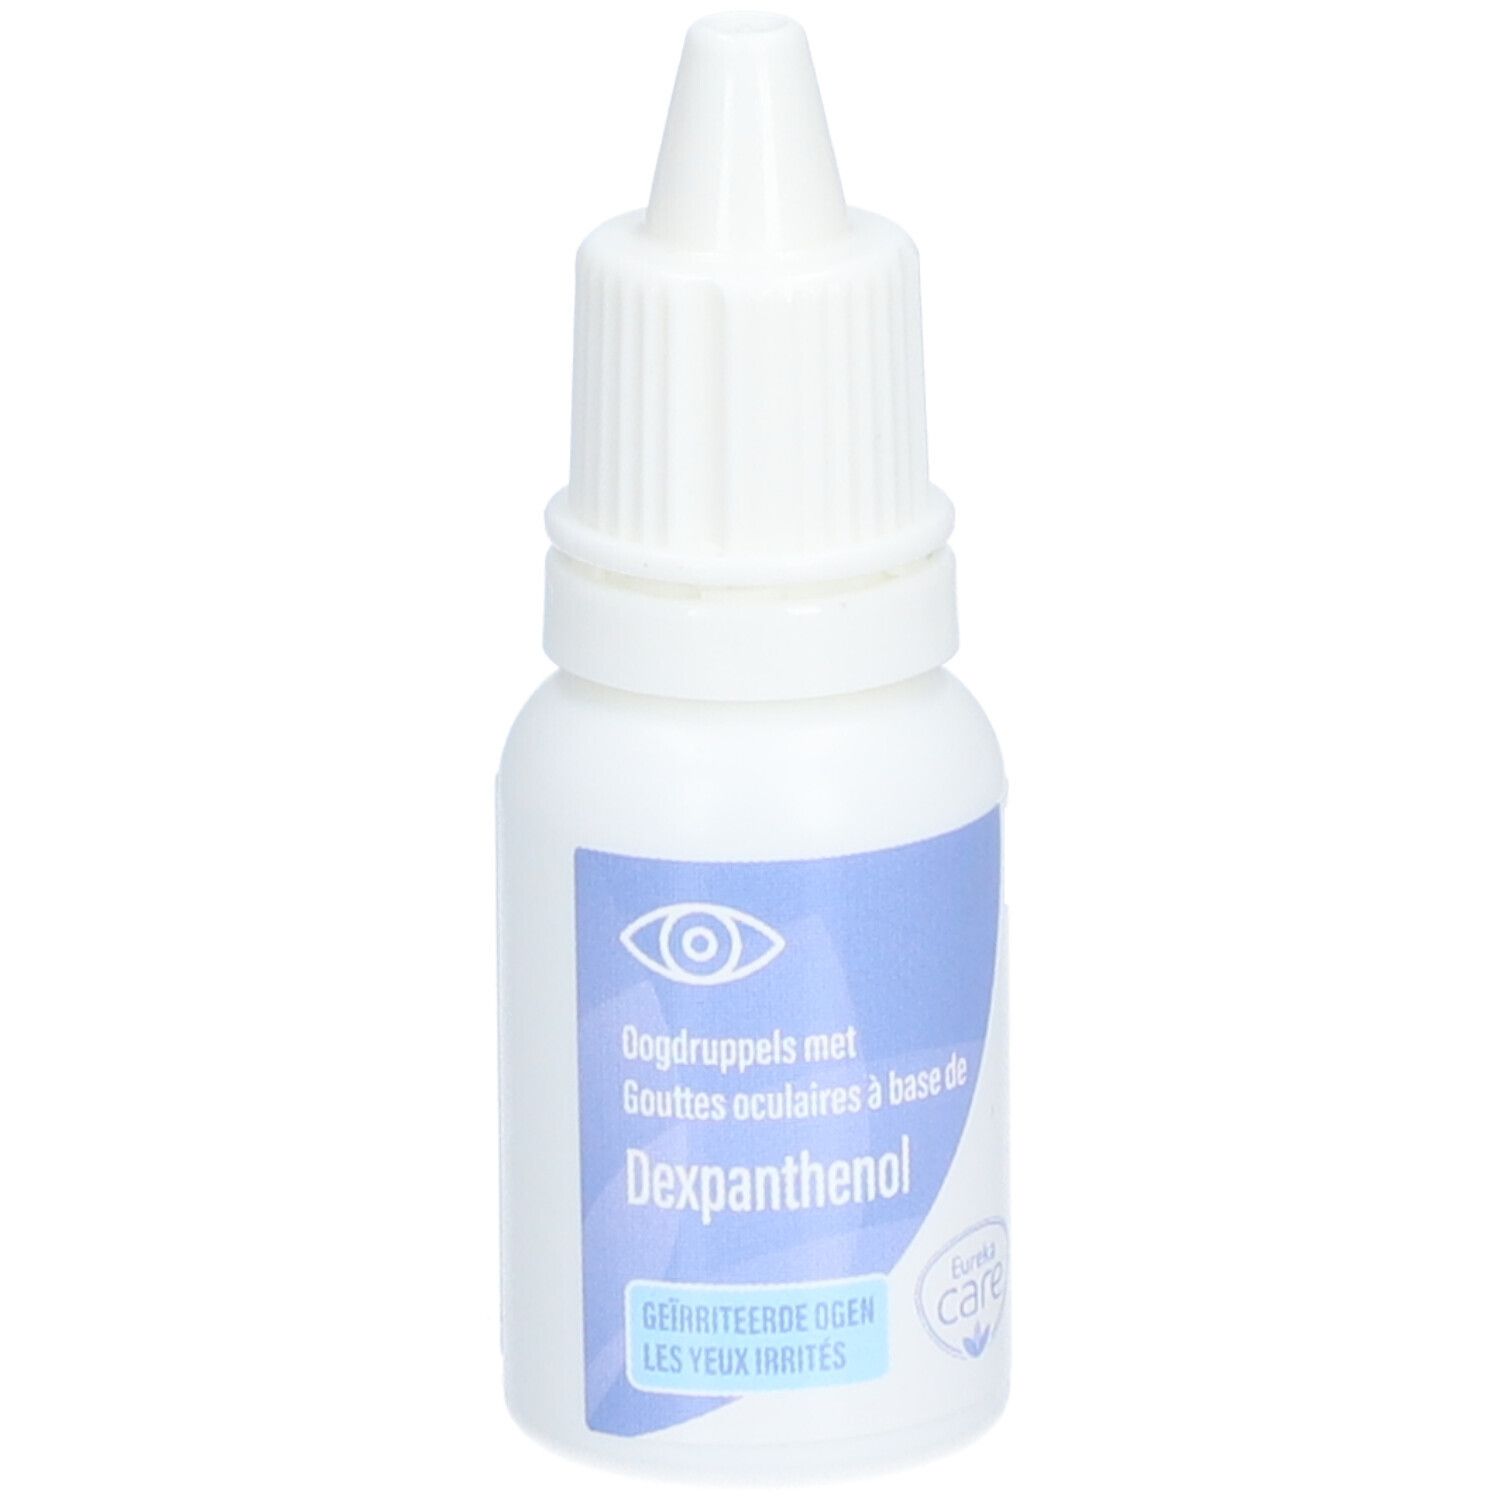 Eureka Care Gouttes Oculaires au Dexpanthenol-Provitamine B5 Yeux Irrités